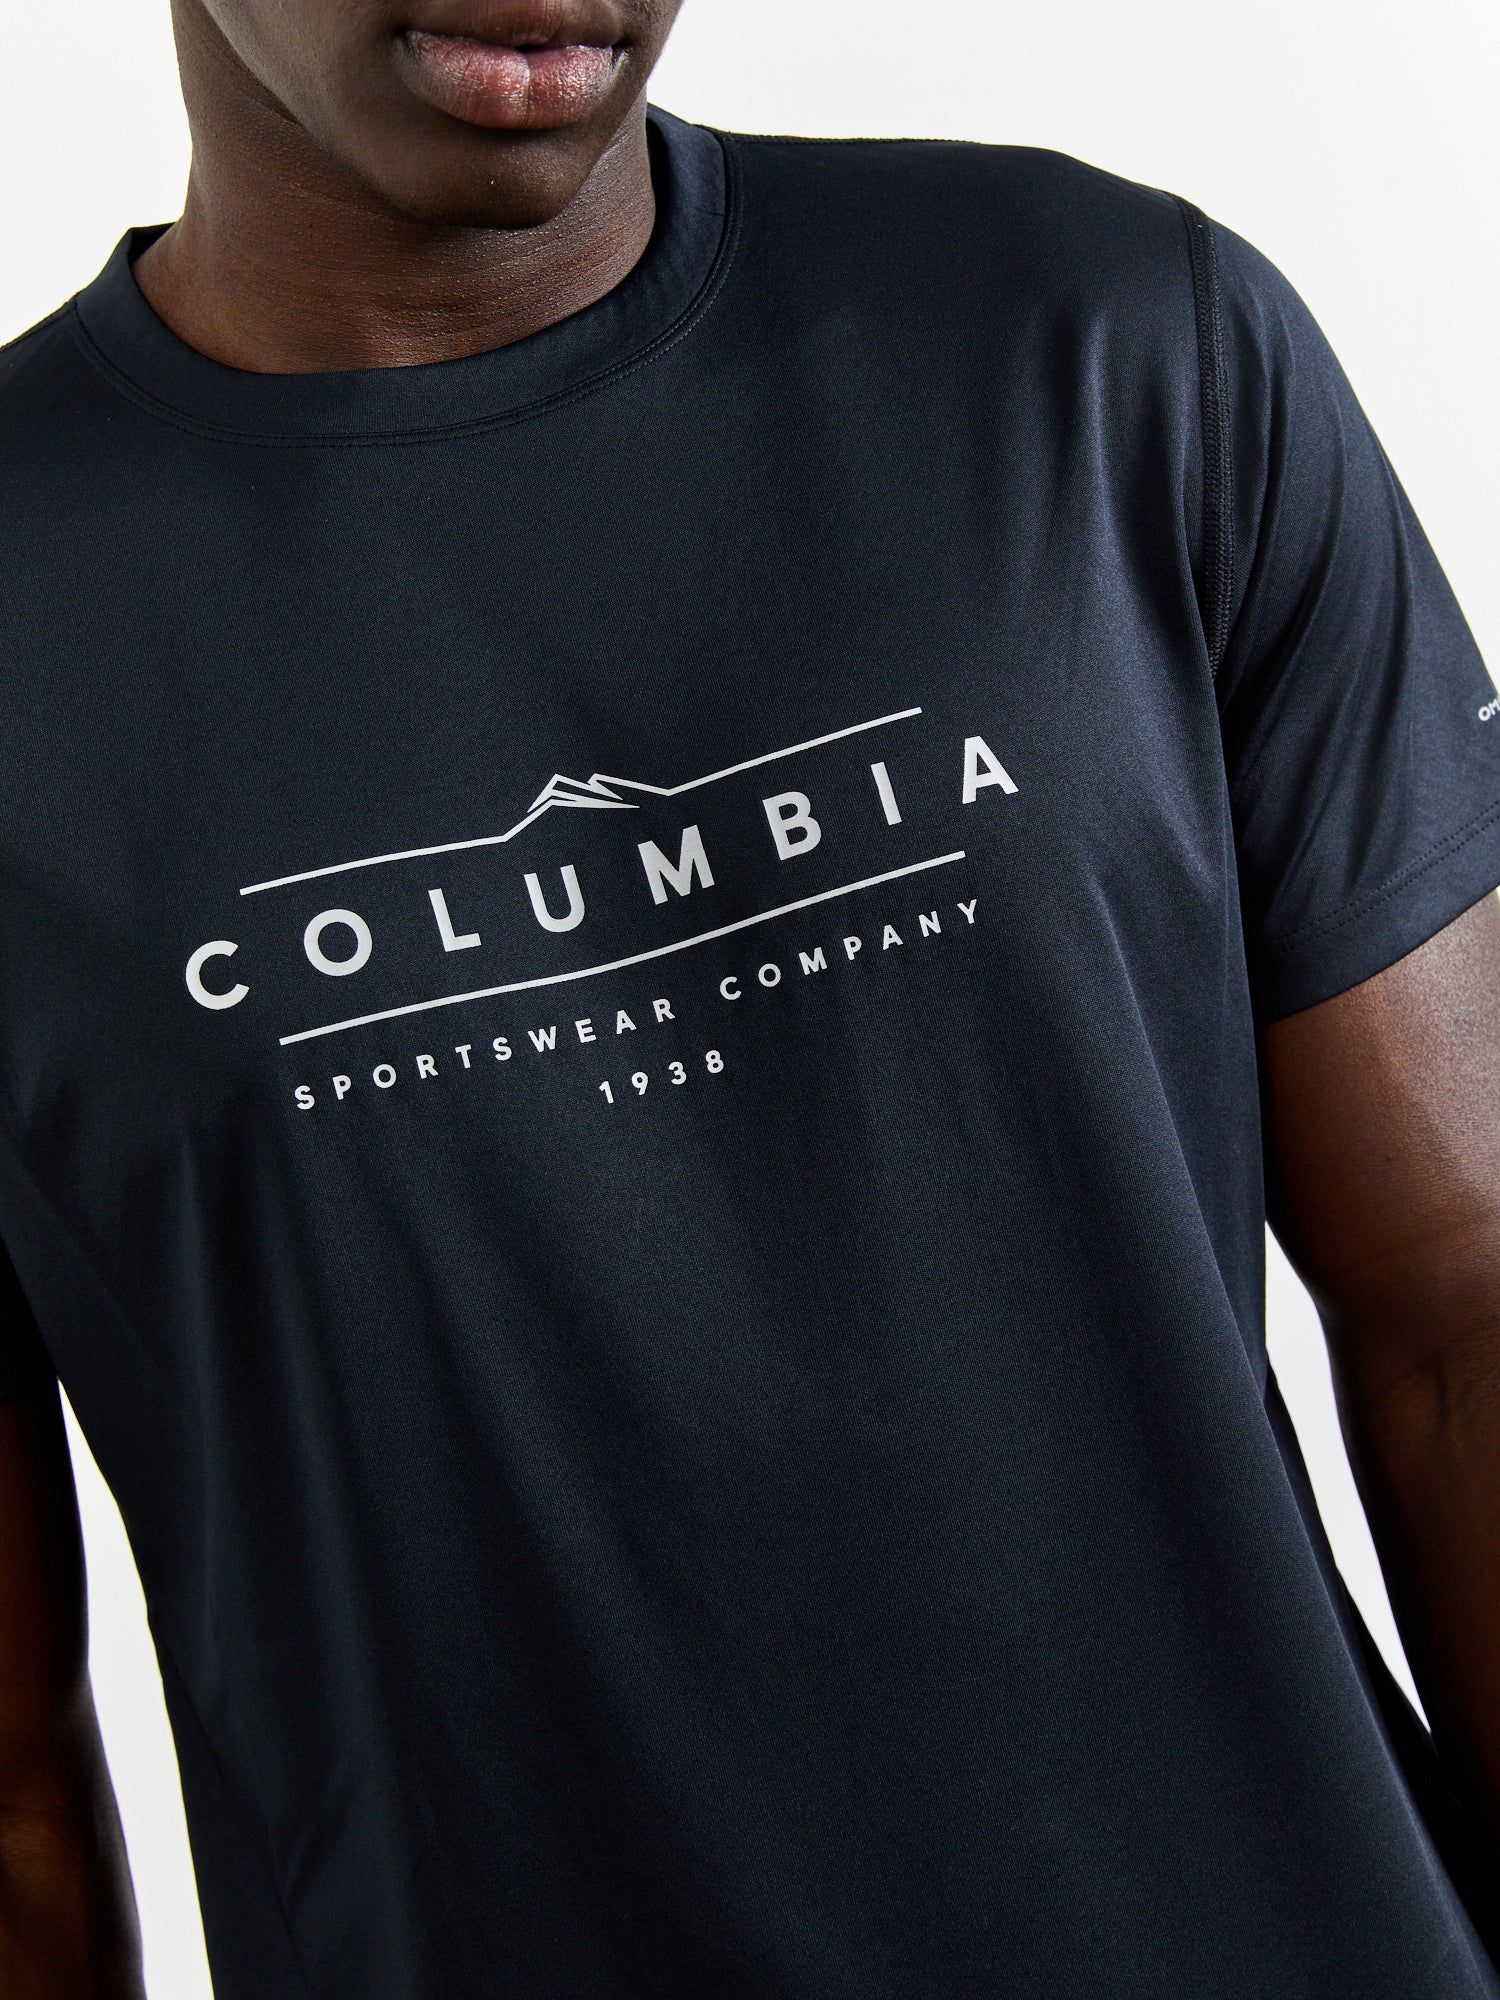 חולצת דרייפיט בהדפס גרפי- Columbia|קולומביה